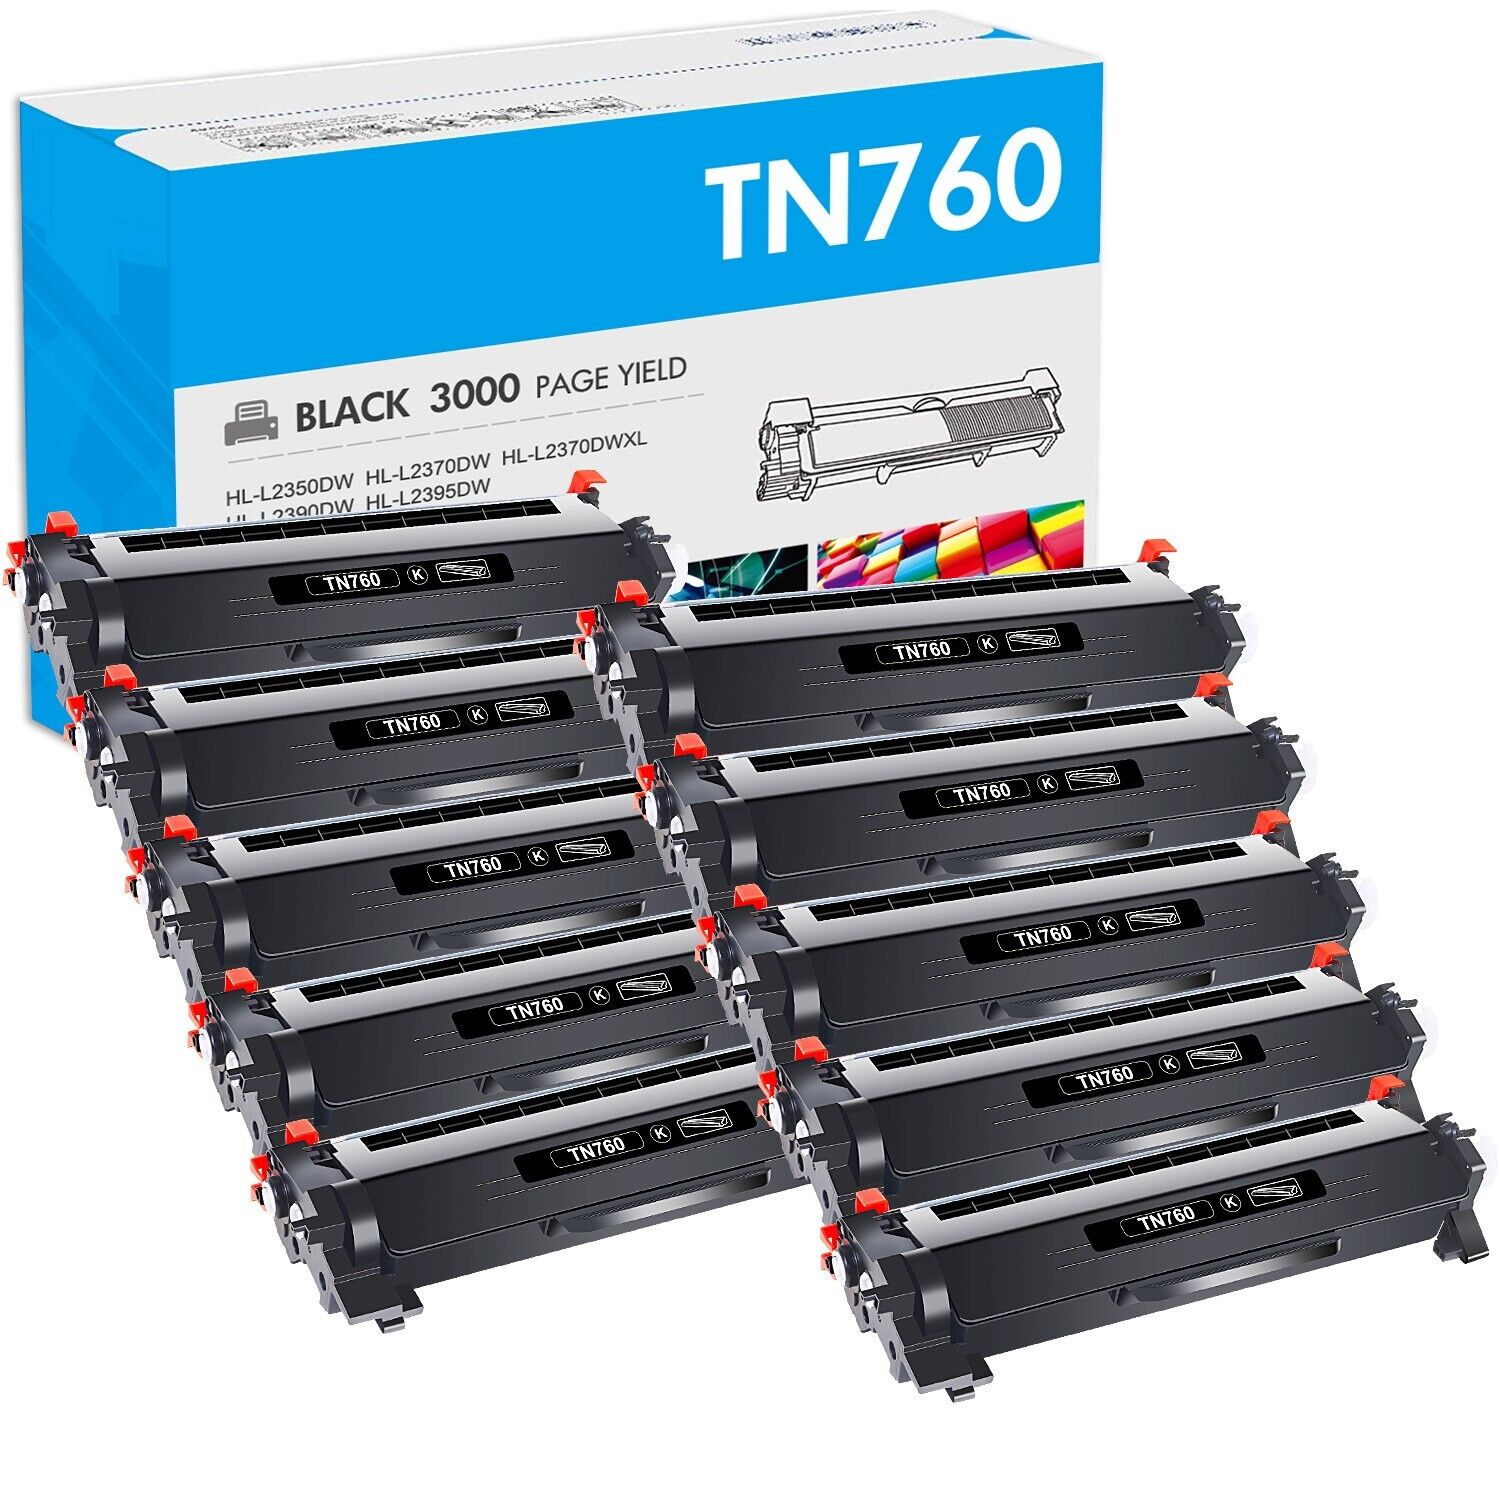 10x Toner Compatible With Brother TN760 TN730 MFC-L2710DW HL-L2730DW MFC-L2750DW